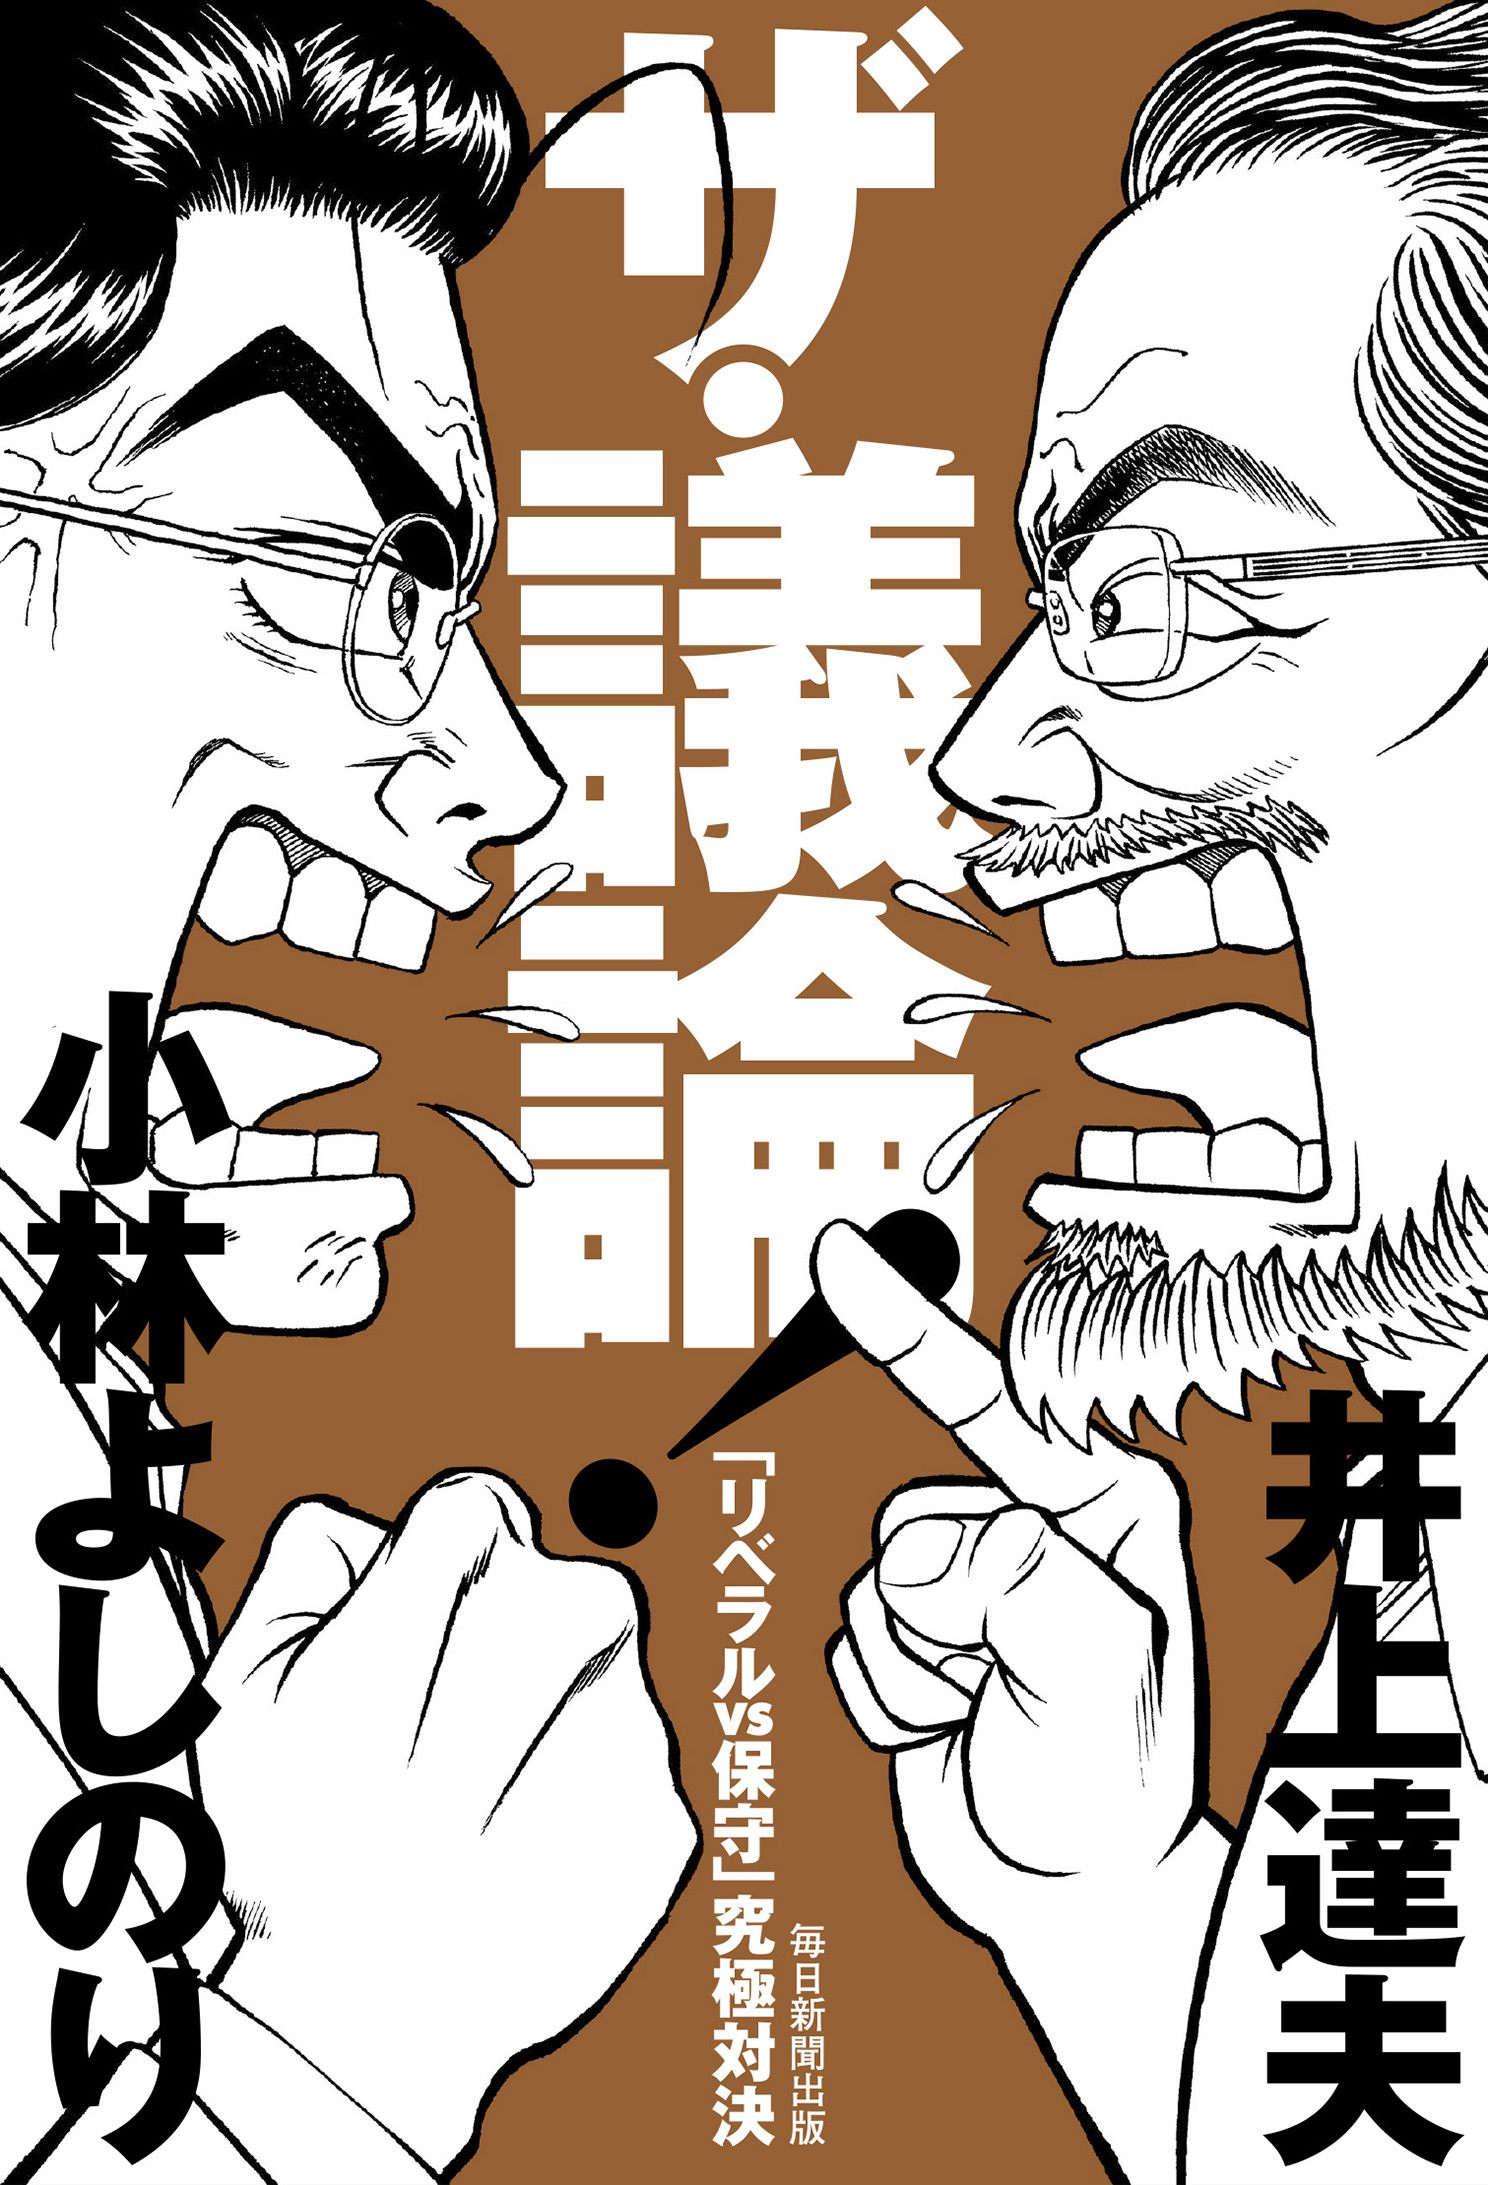 井上氏と小林氏が議論しているコミック調イラストの表紙